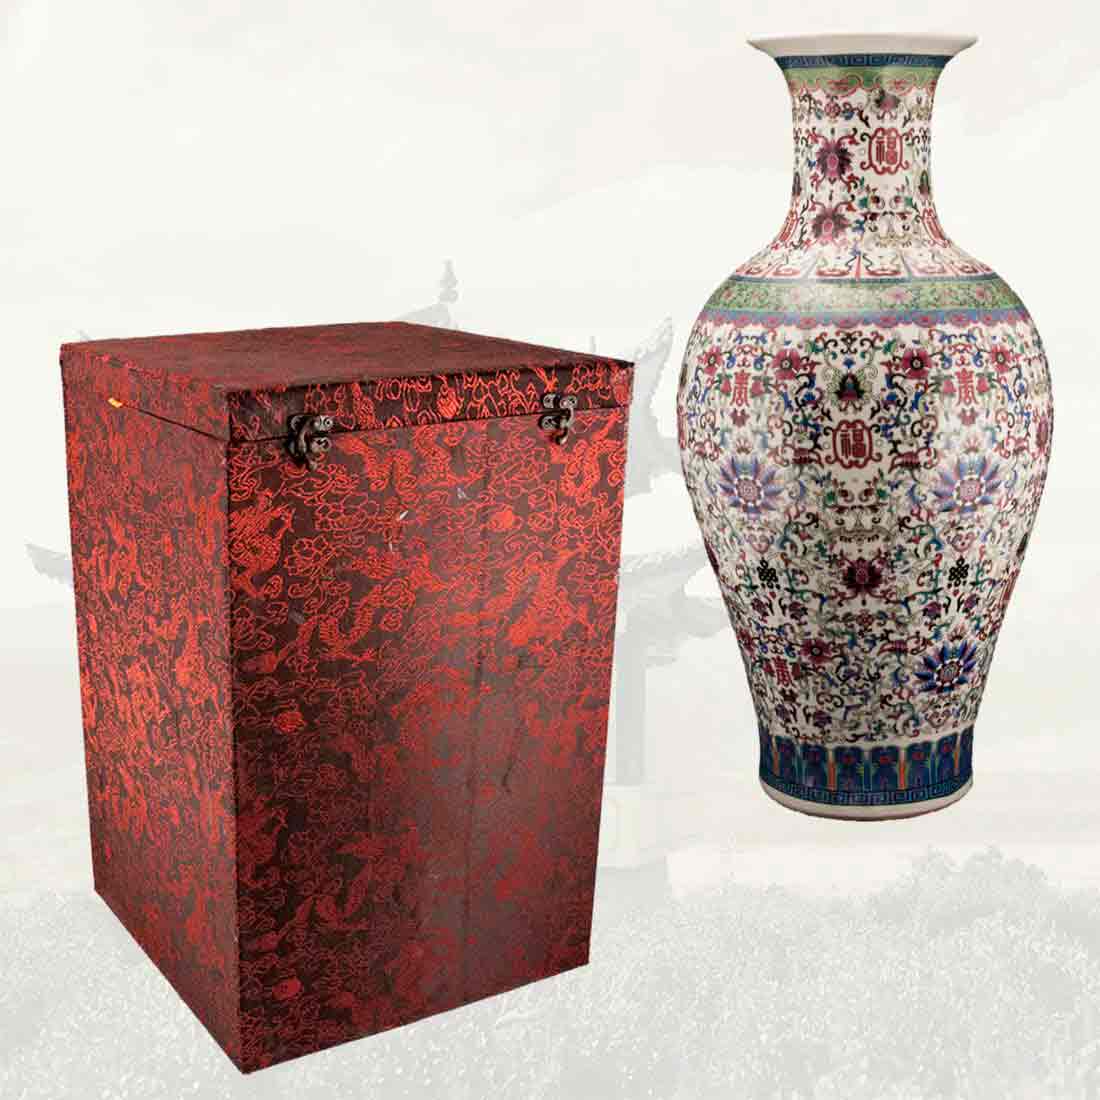 Китайская ваза, "Цветки талисмана" [吉祥] в интернет-студии декора / шоурум | ChinaHouse.studio